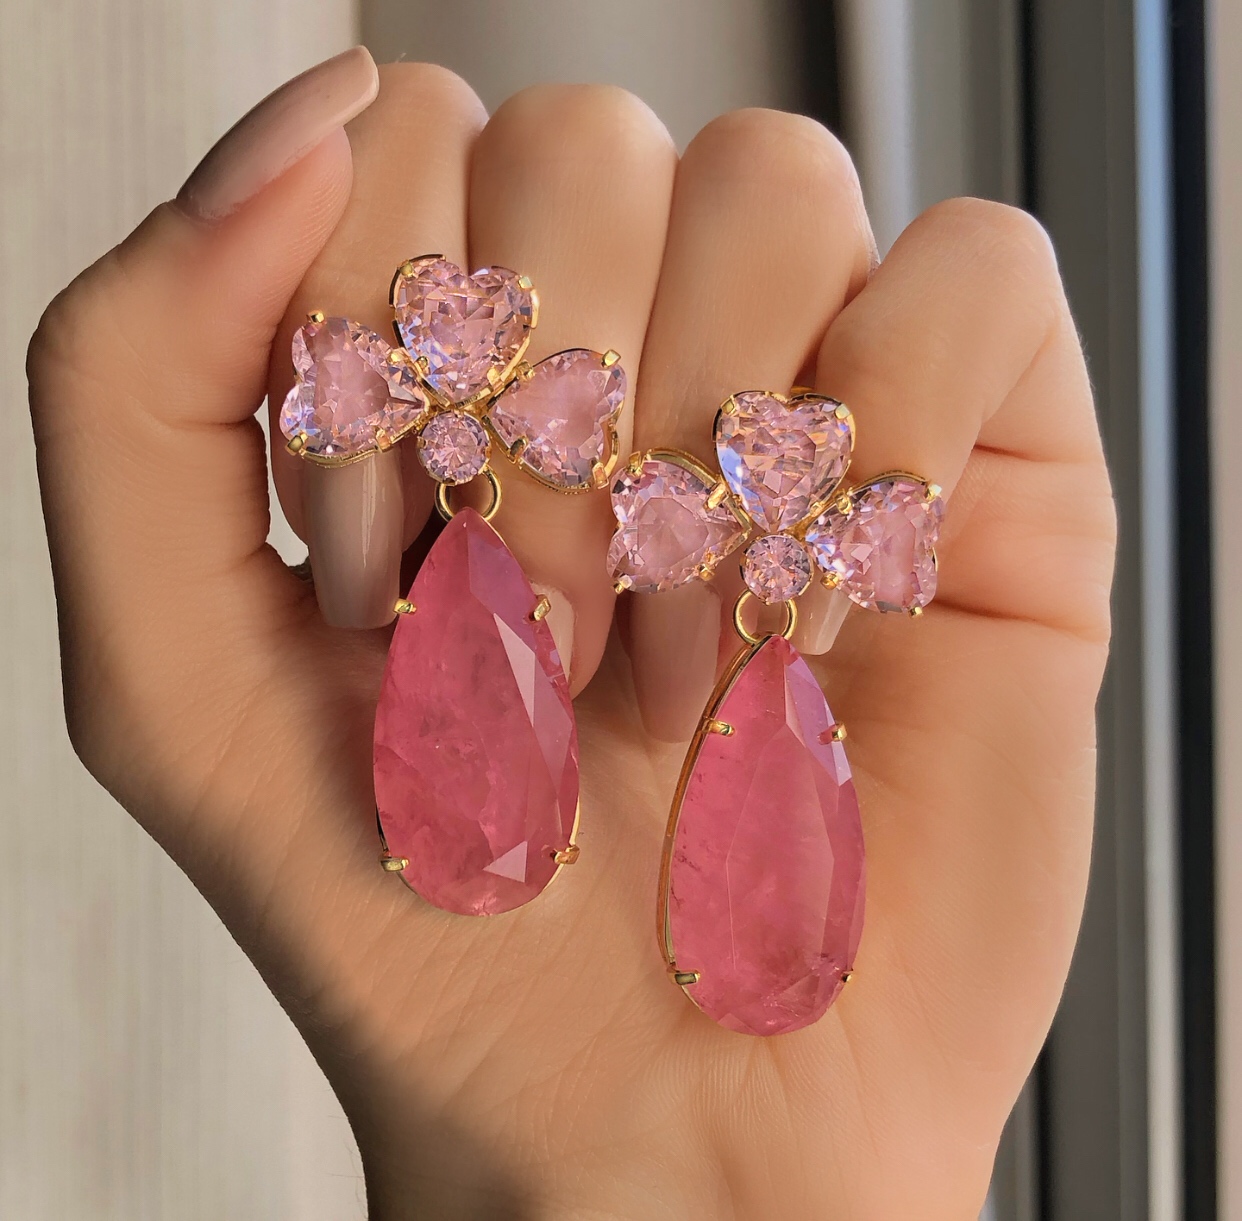 Brinco Aspen Corações de Cristal Safira Rosa e Pedra Fusion Rosa Chiclete  Dourado - Angela Jesus - Semi Joias de luxo para você!